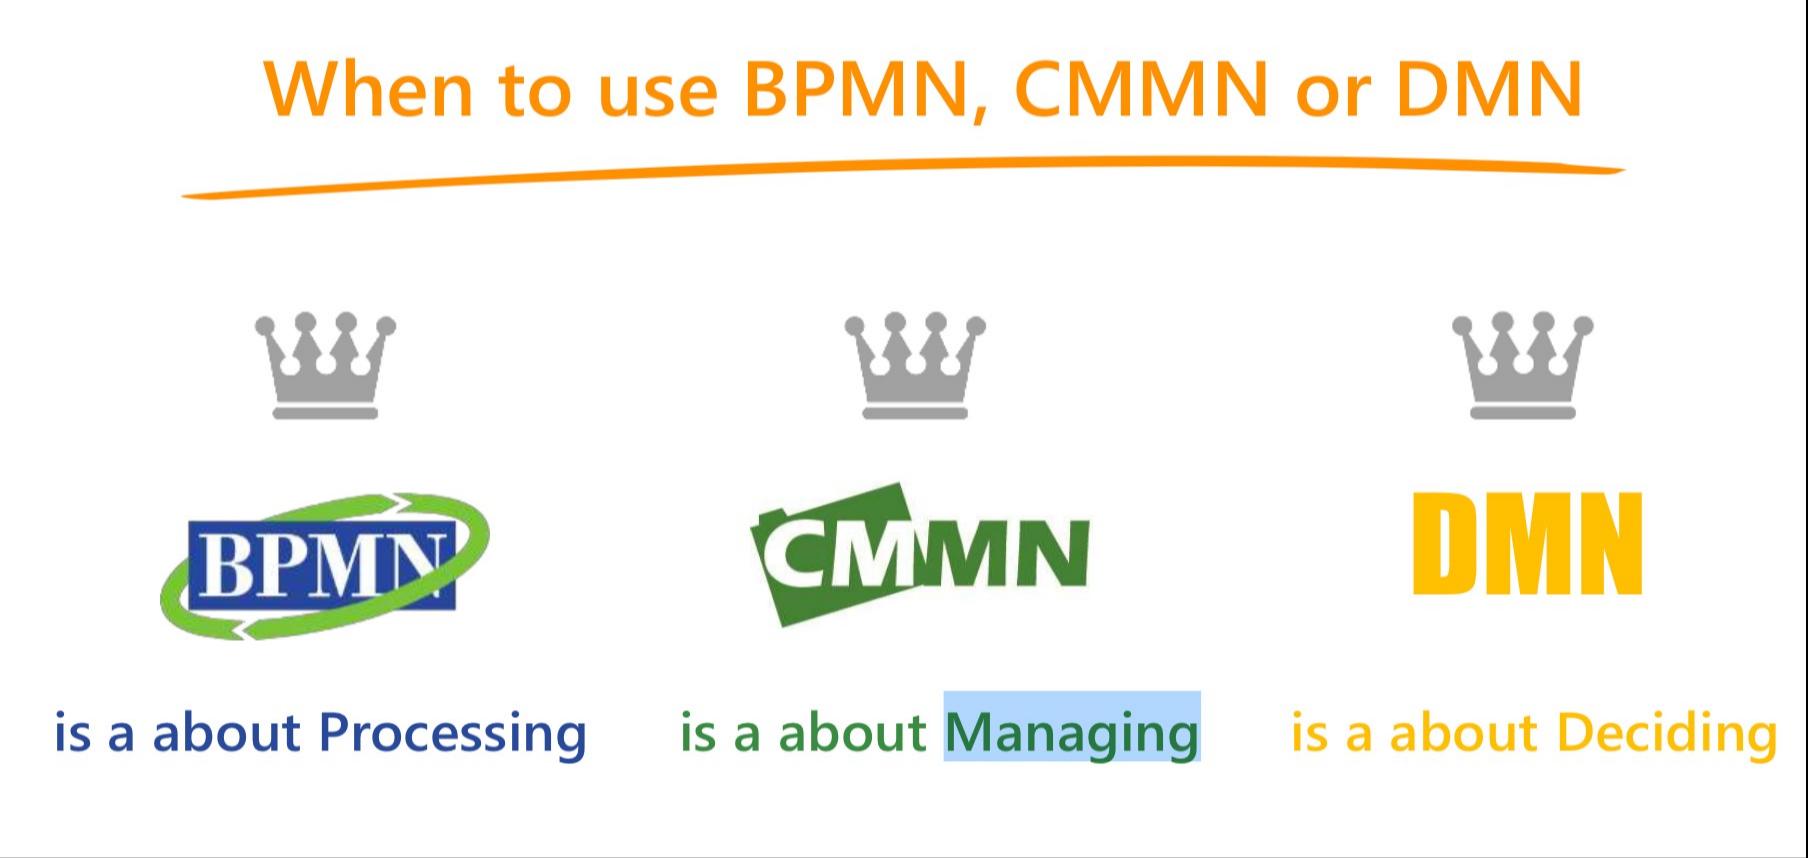 BPMN CMMN DMN说明